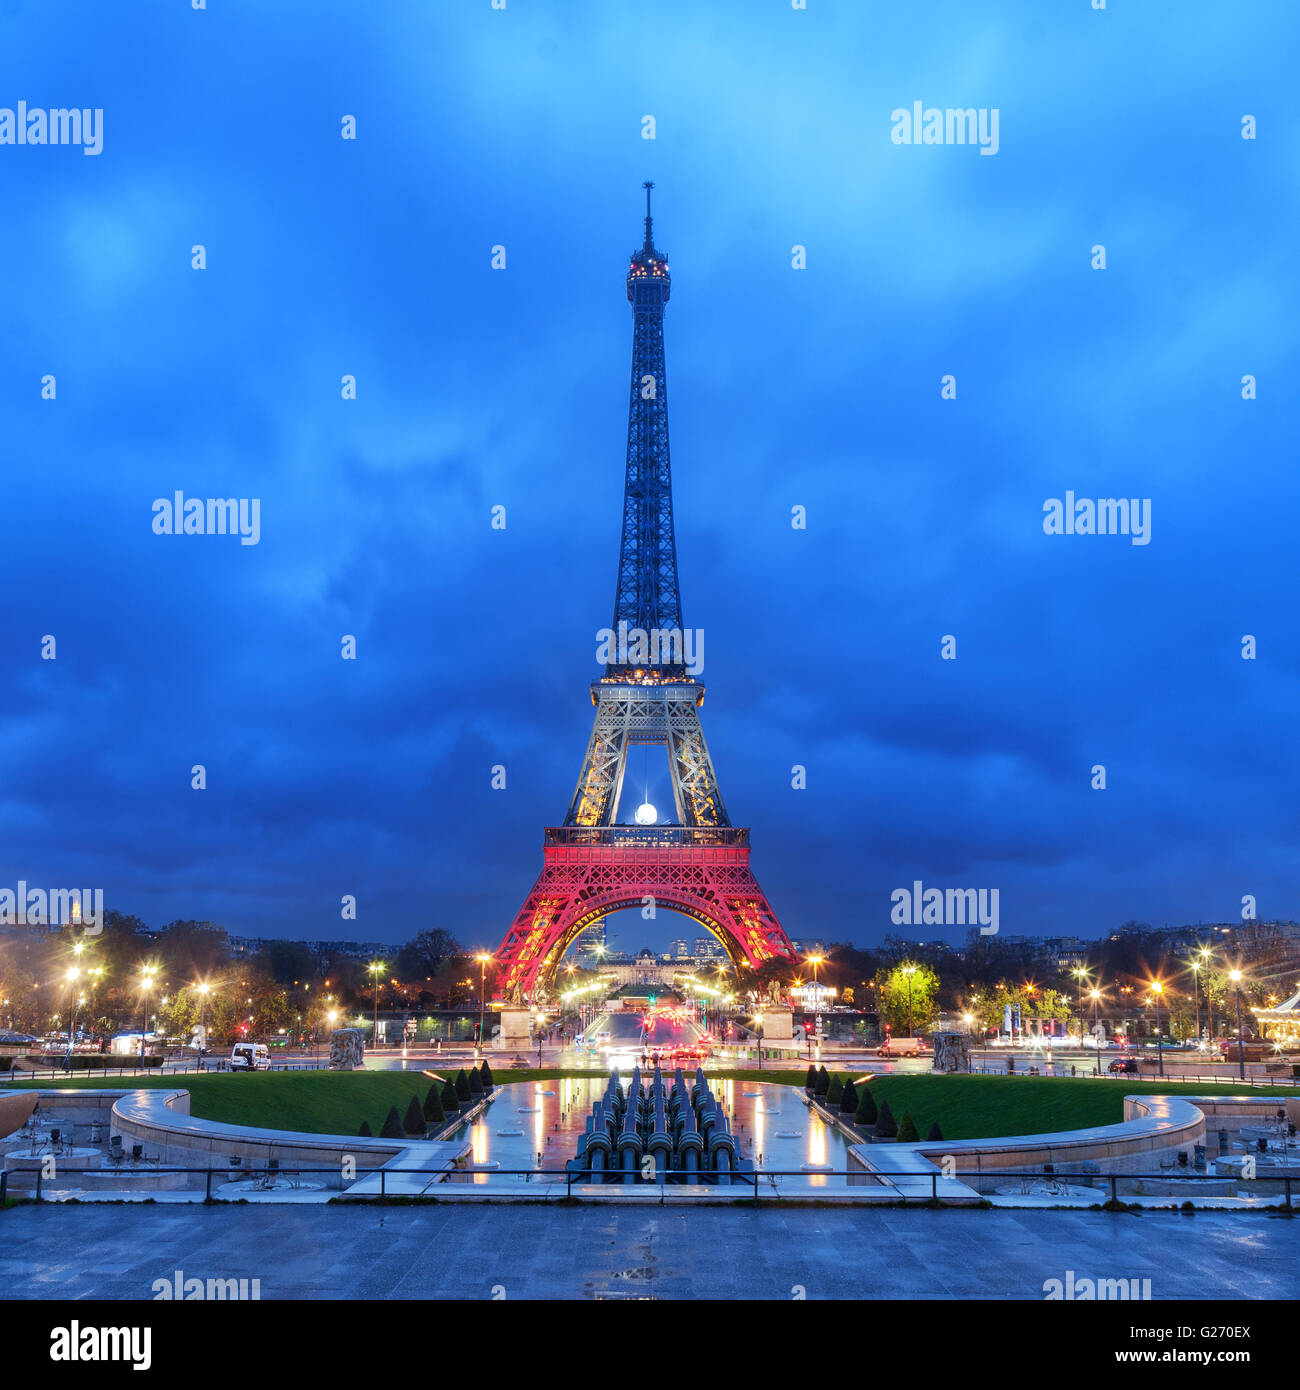 París, Francia - 20 de noviembre de 2015: la torre Eiffel iluminada con los colores de la bandera nacional de Francia después del viernes 13 de noviembre de terro Foto de stock